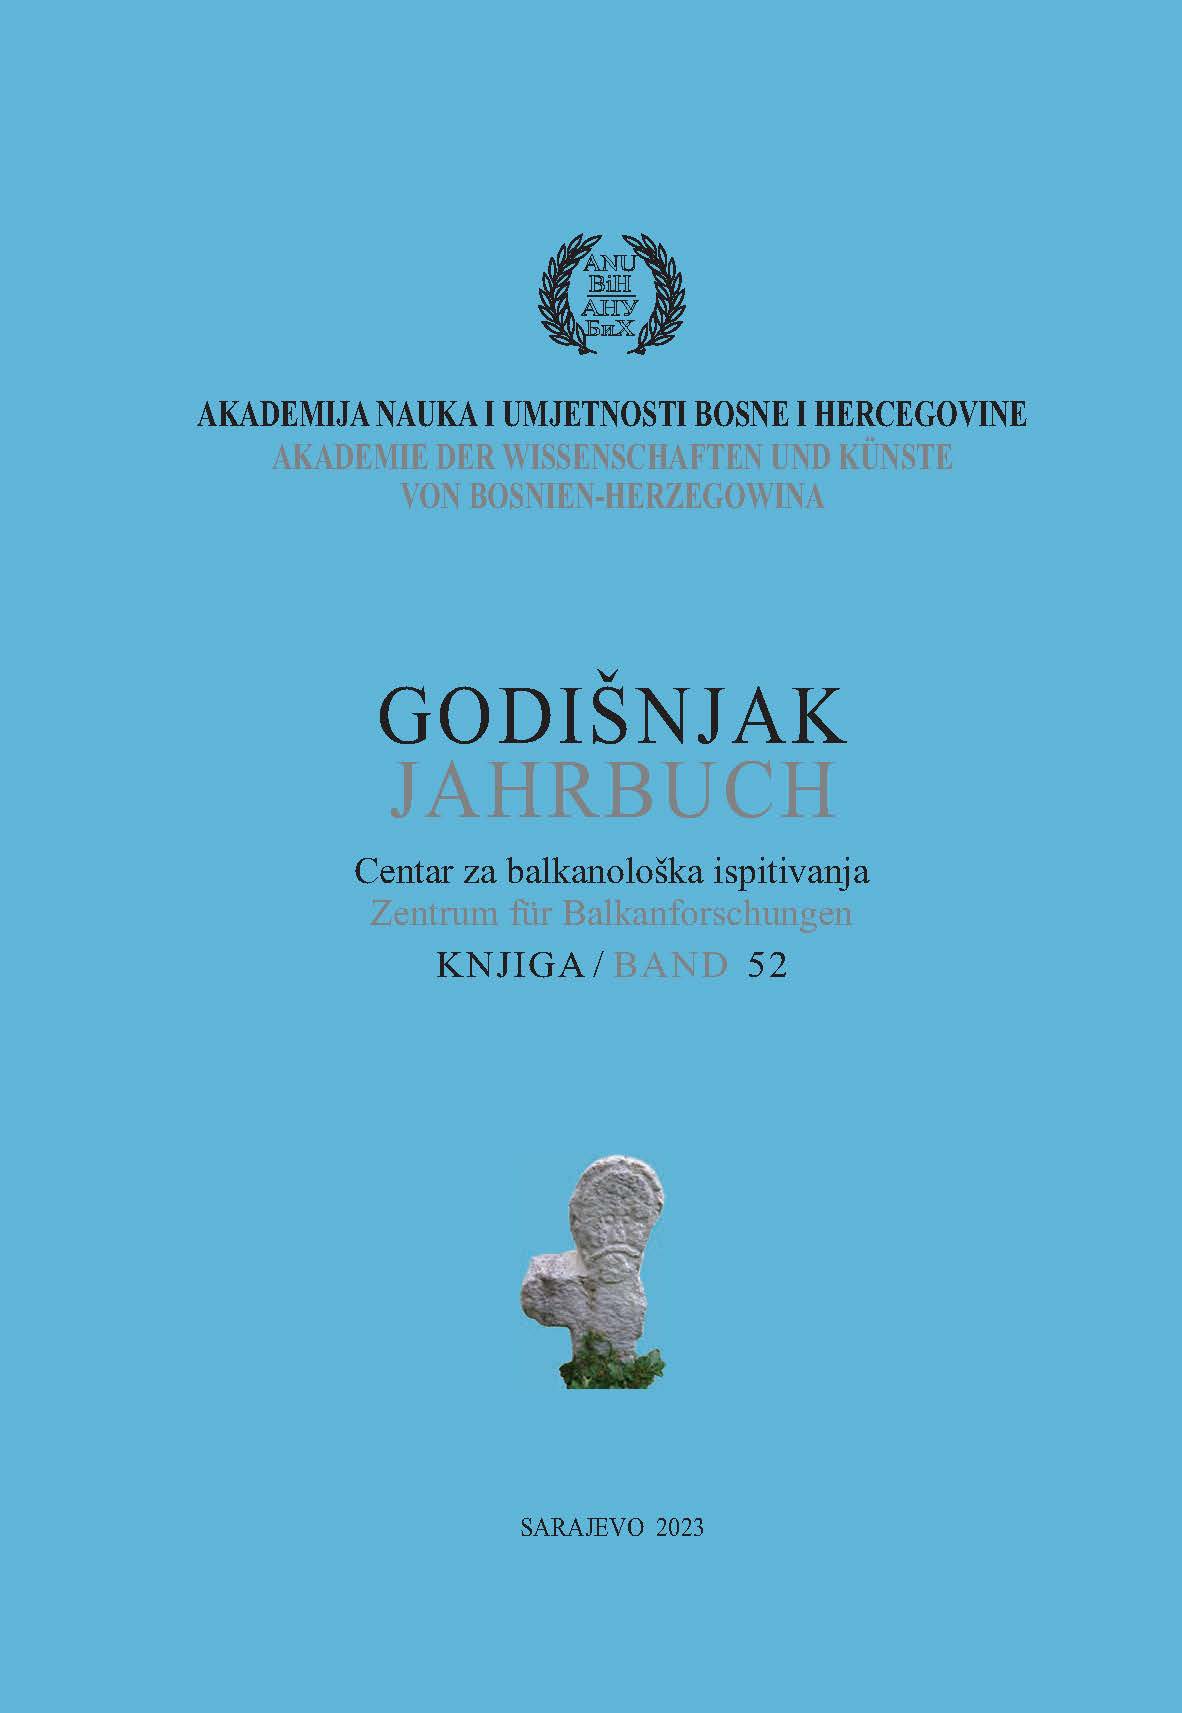 Gräberfeld Kopilo bei Zenica – Neue Erkenntnisse zur Bestattungsweise während der Spätbronze- und Früheisenzeit in Zentralbosnien